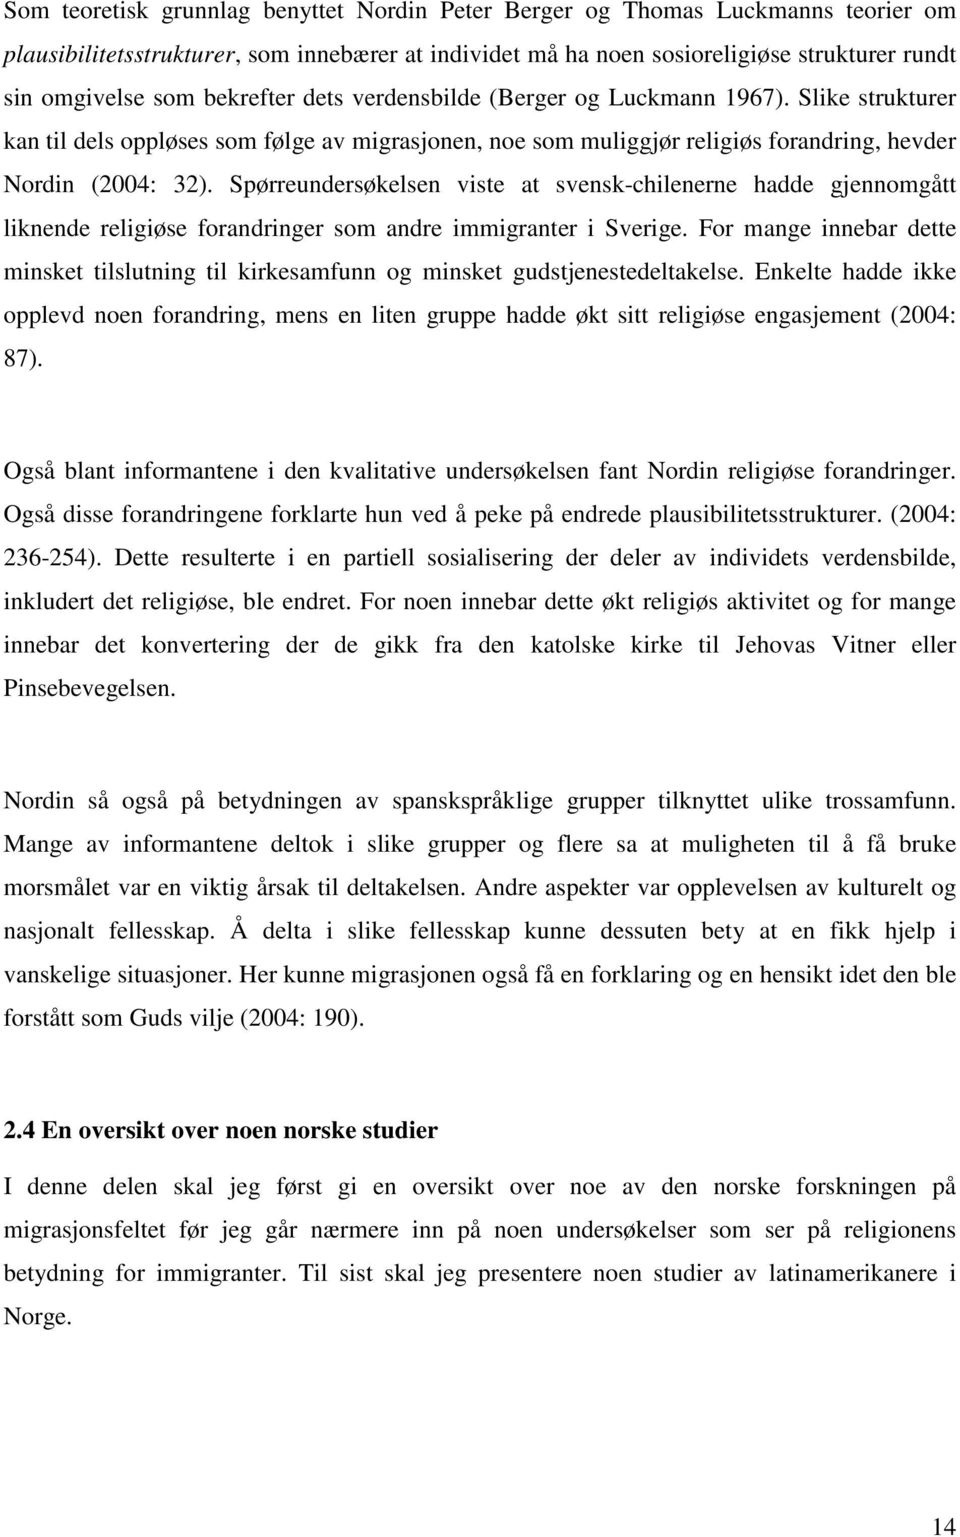 Spørreundersøkelsen viste at svensk-chilenerne hadde gjennomgått liknende religiøse forandringer som andre immigranter i Sverige.